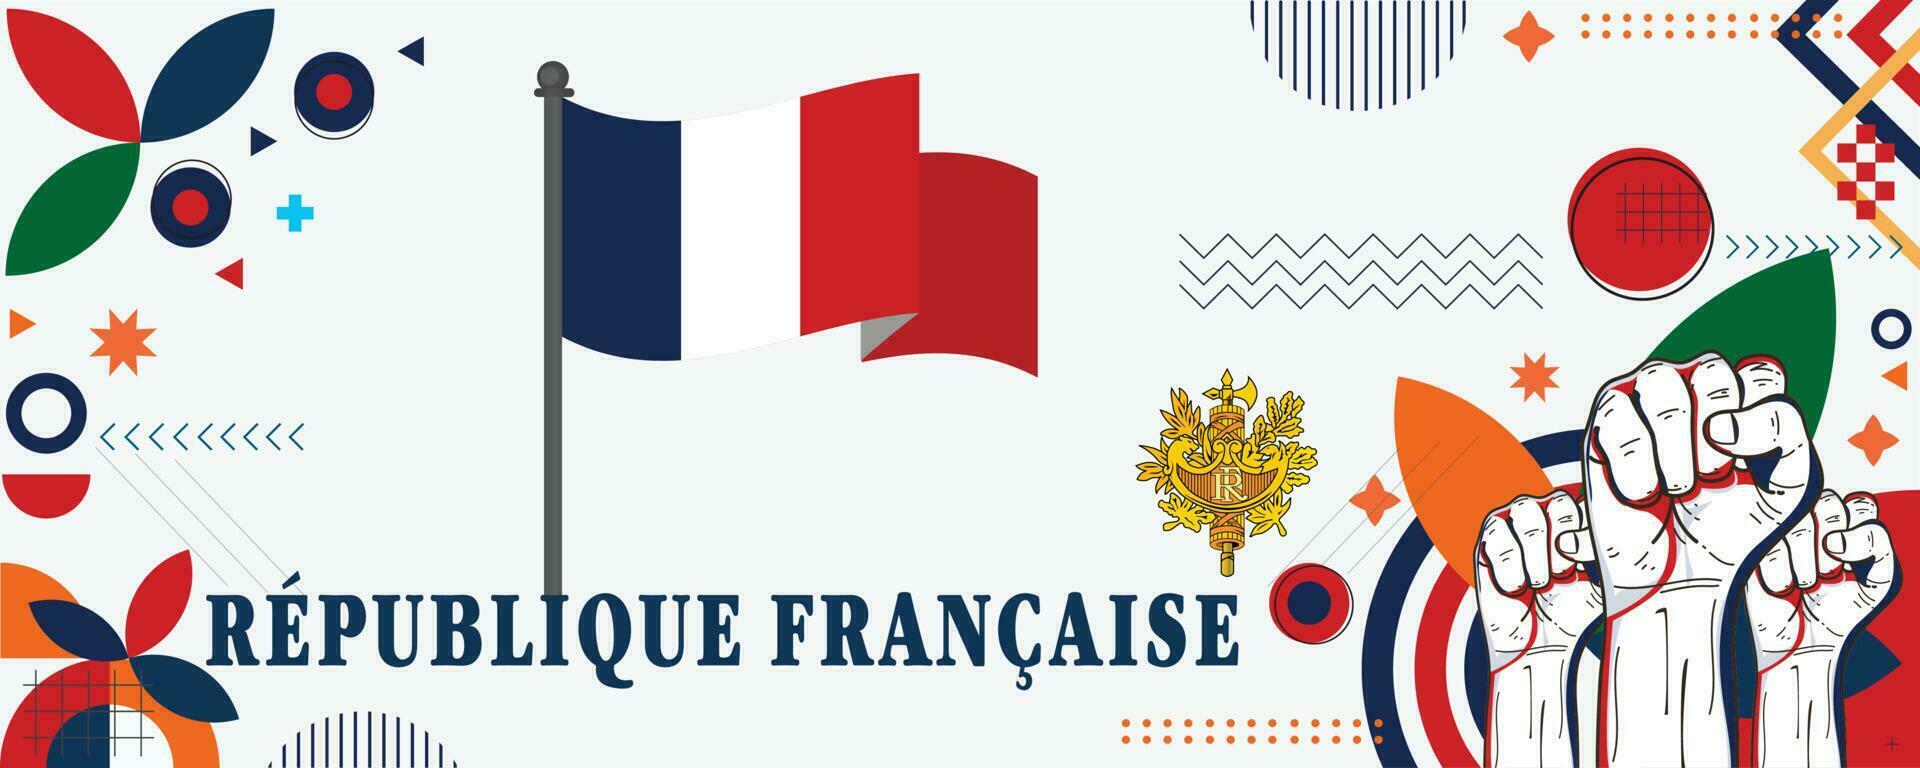 France national day banner design vector eps